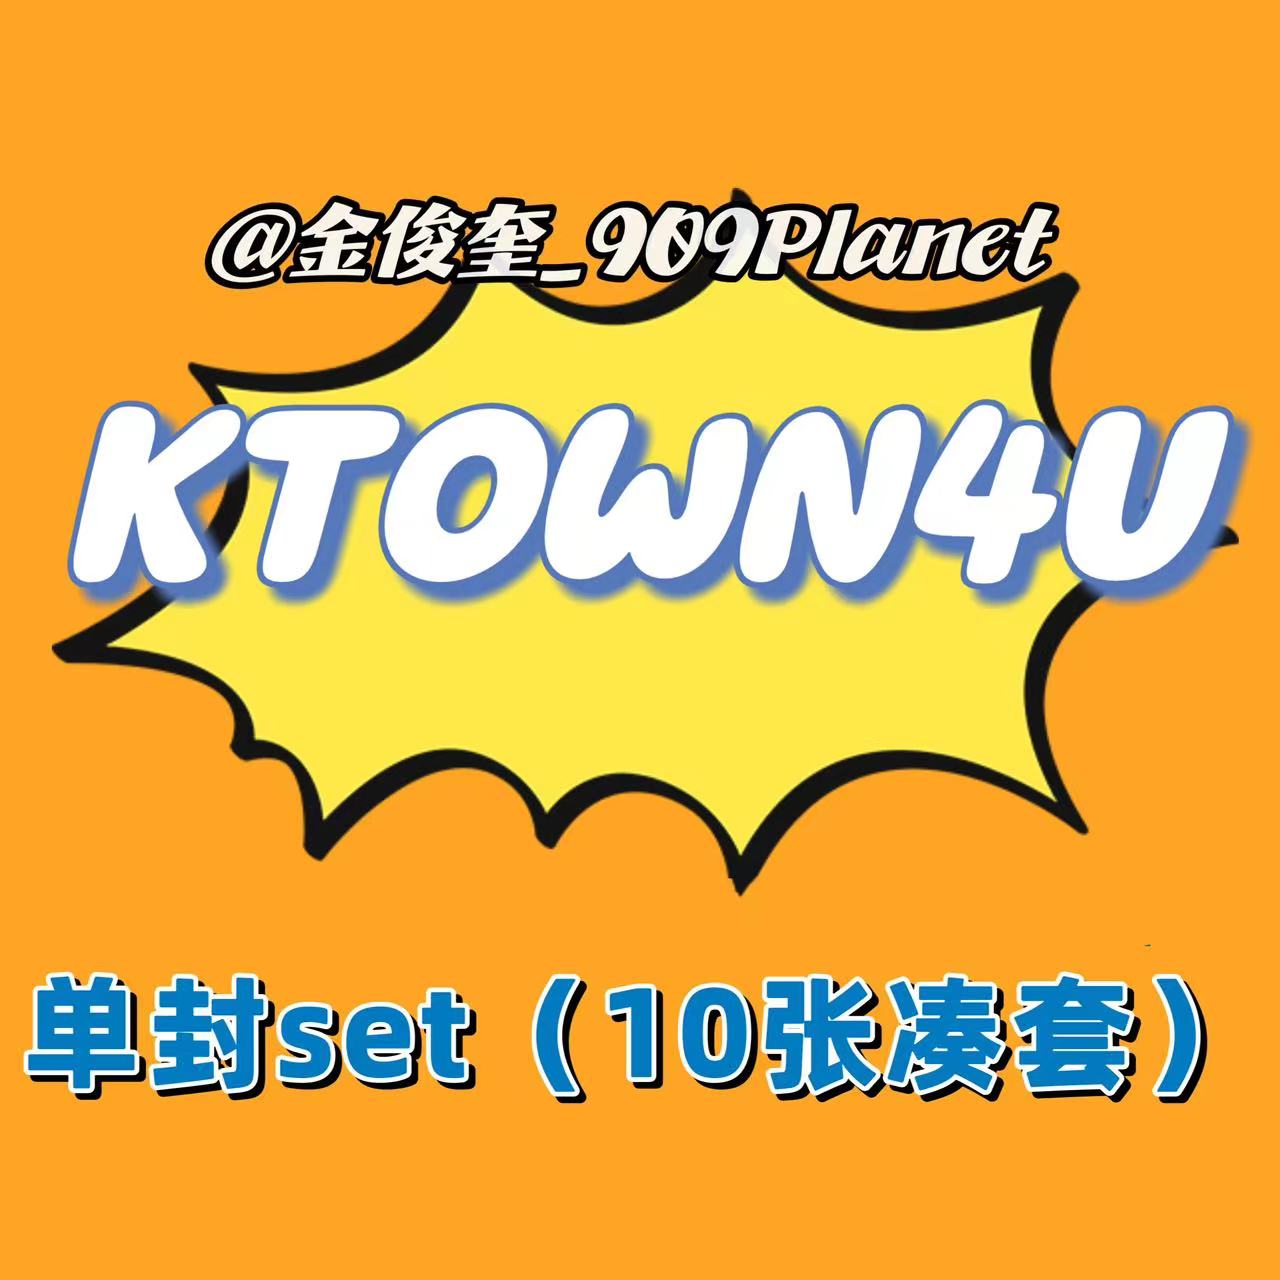 [全款 裸专] [Ktown4u Special Gift] [10CD 套装] TREASURE - 2ND FULL ALBUM [REBOOT] DIGIPACK VER. _金俊奎909Planet